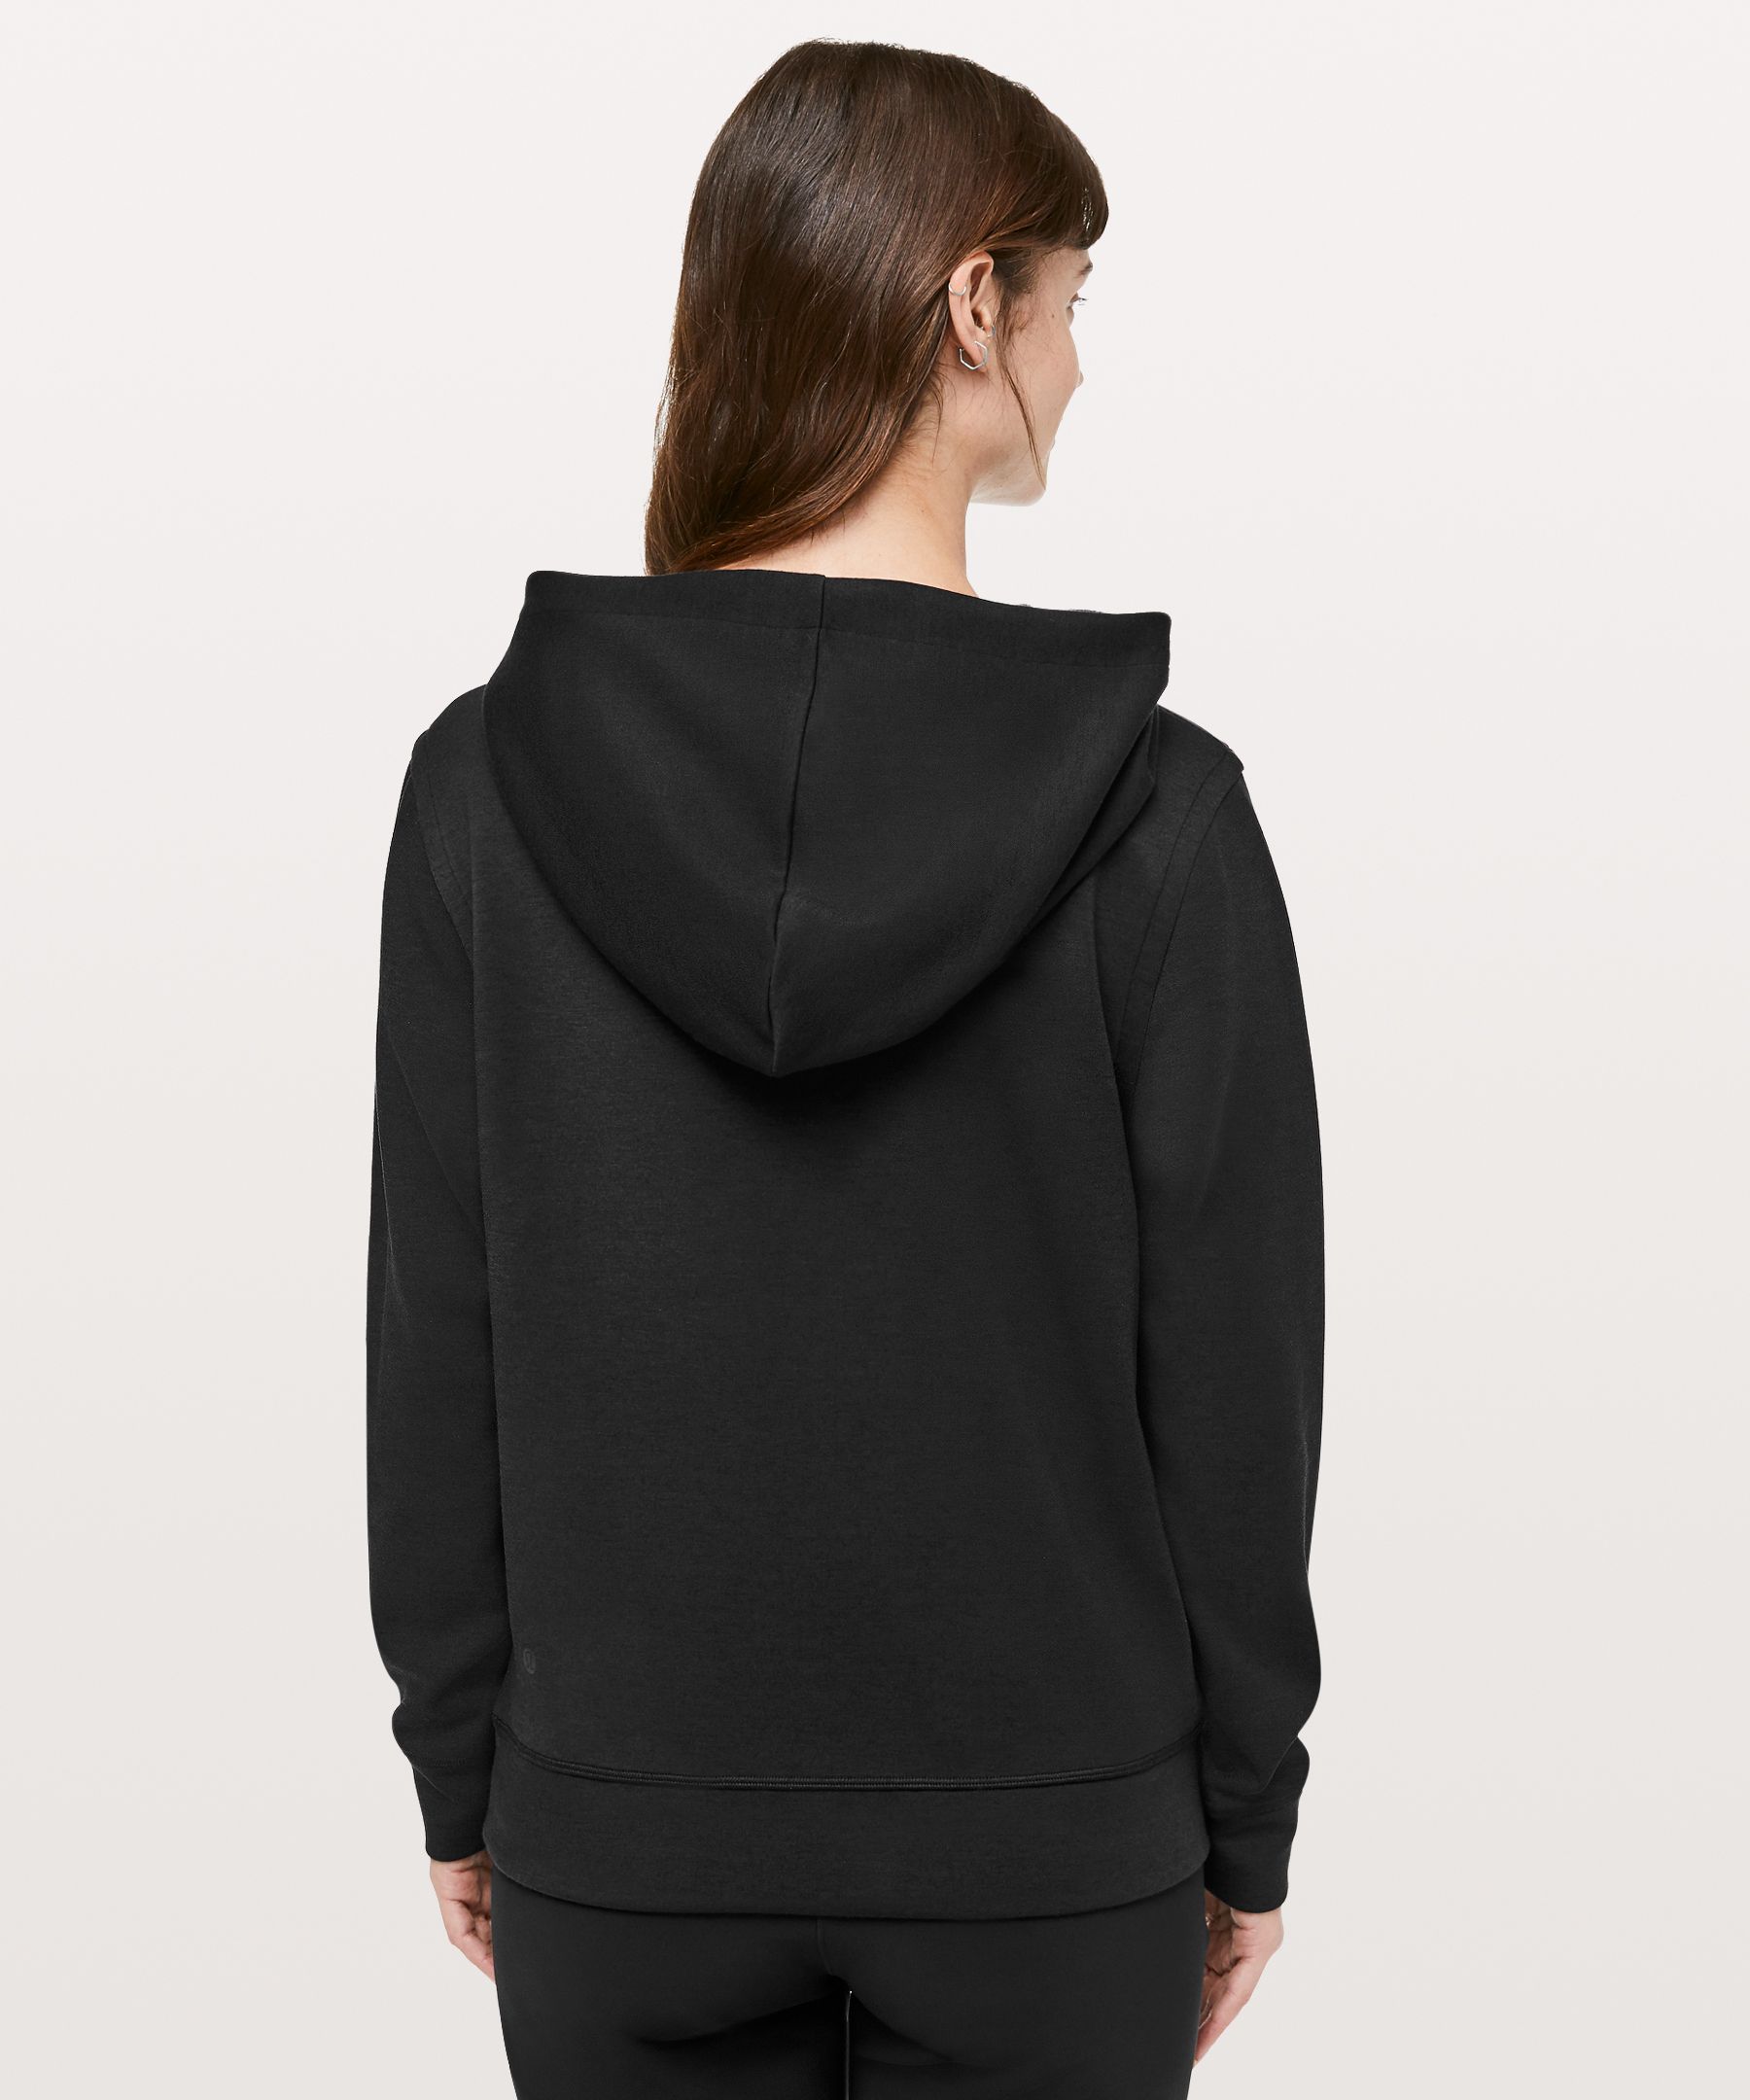 city sleek hoodie lululemon